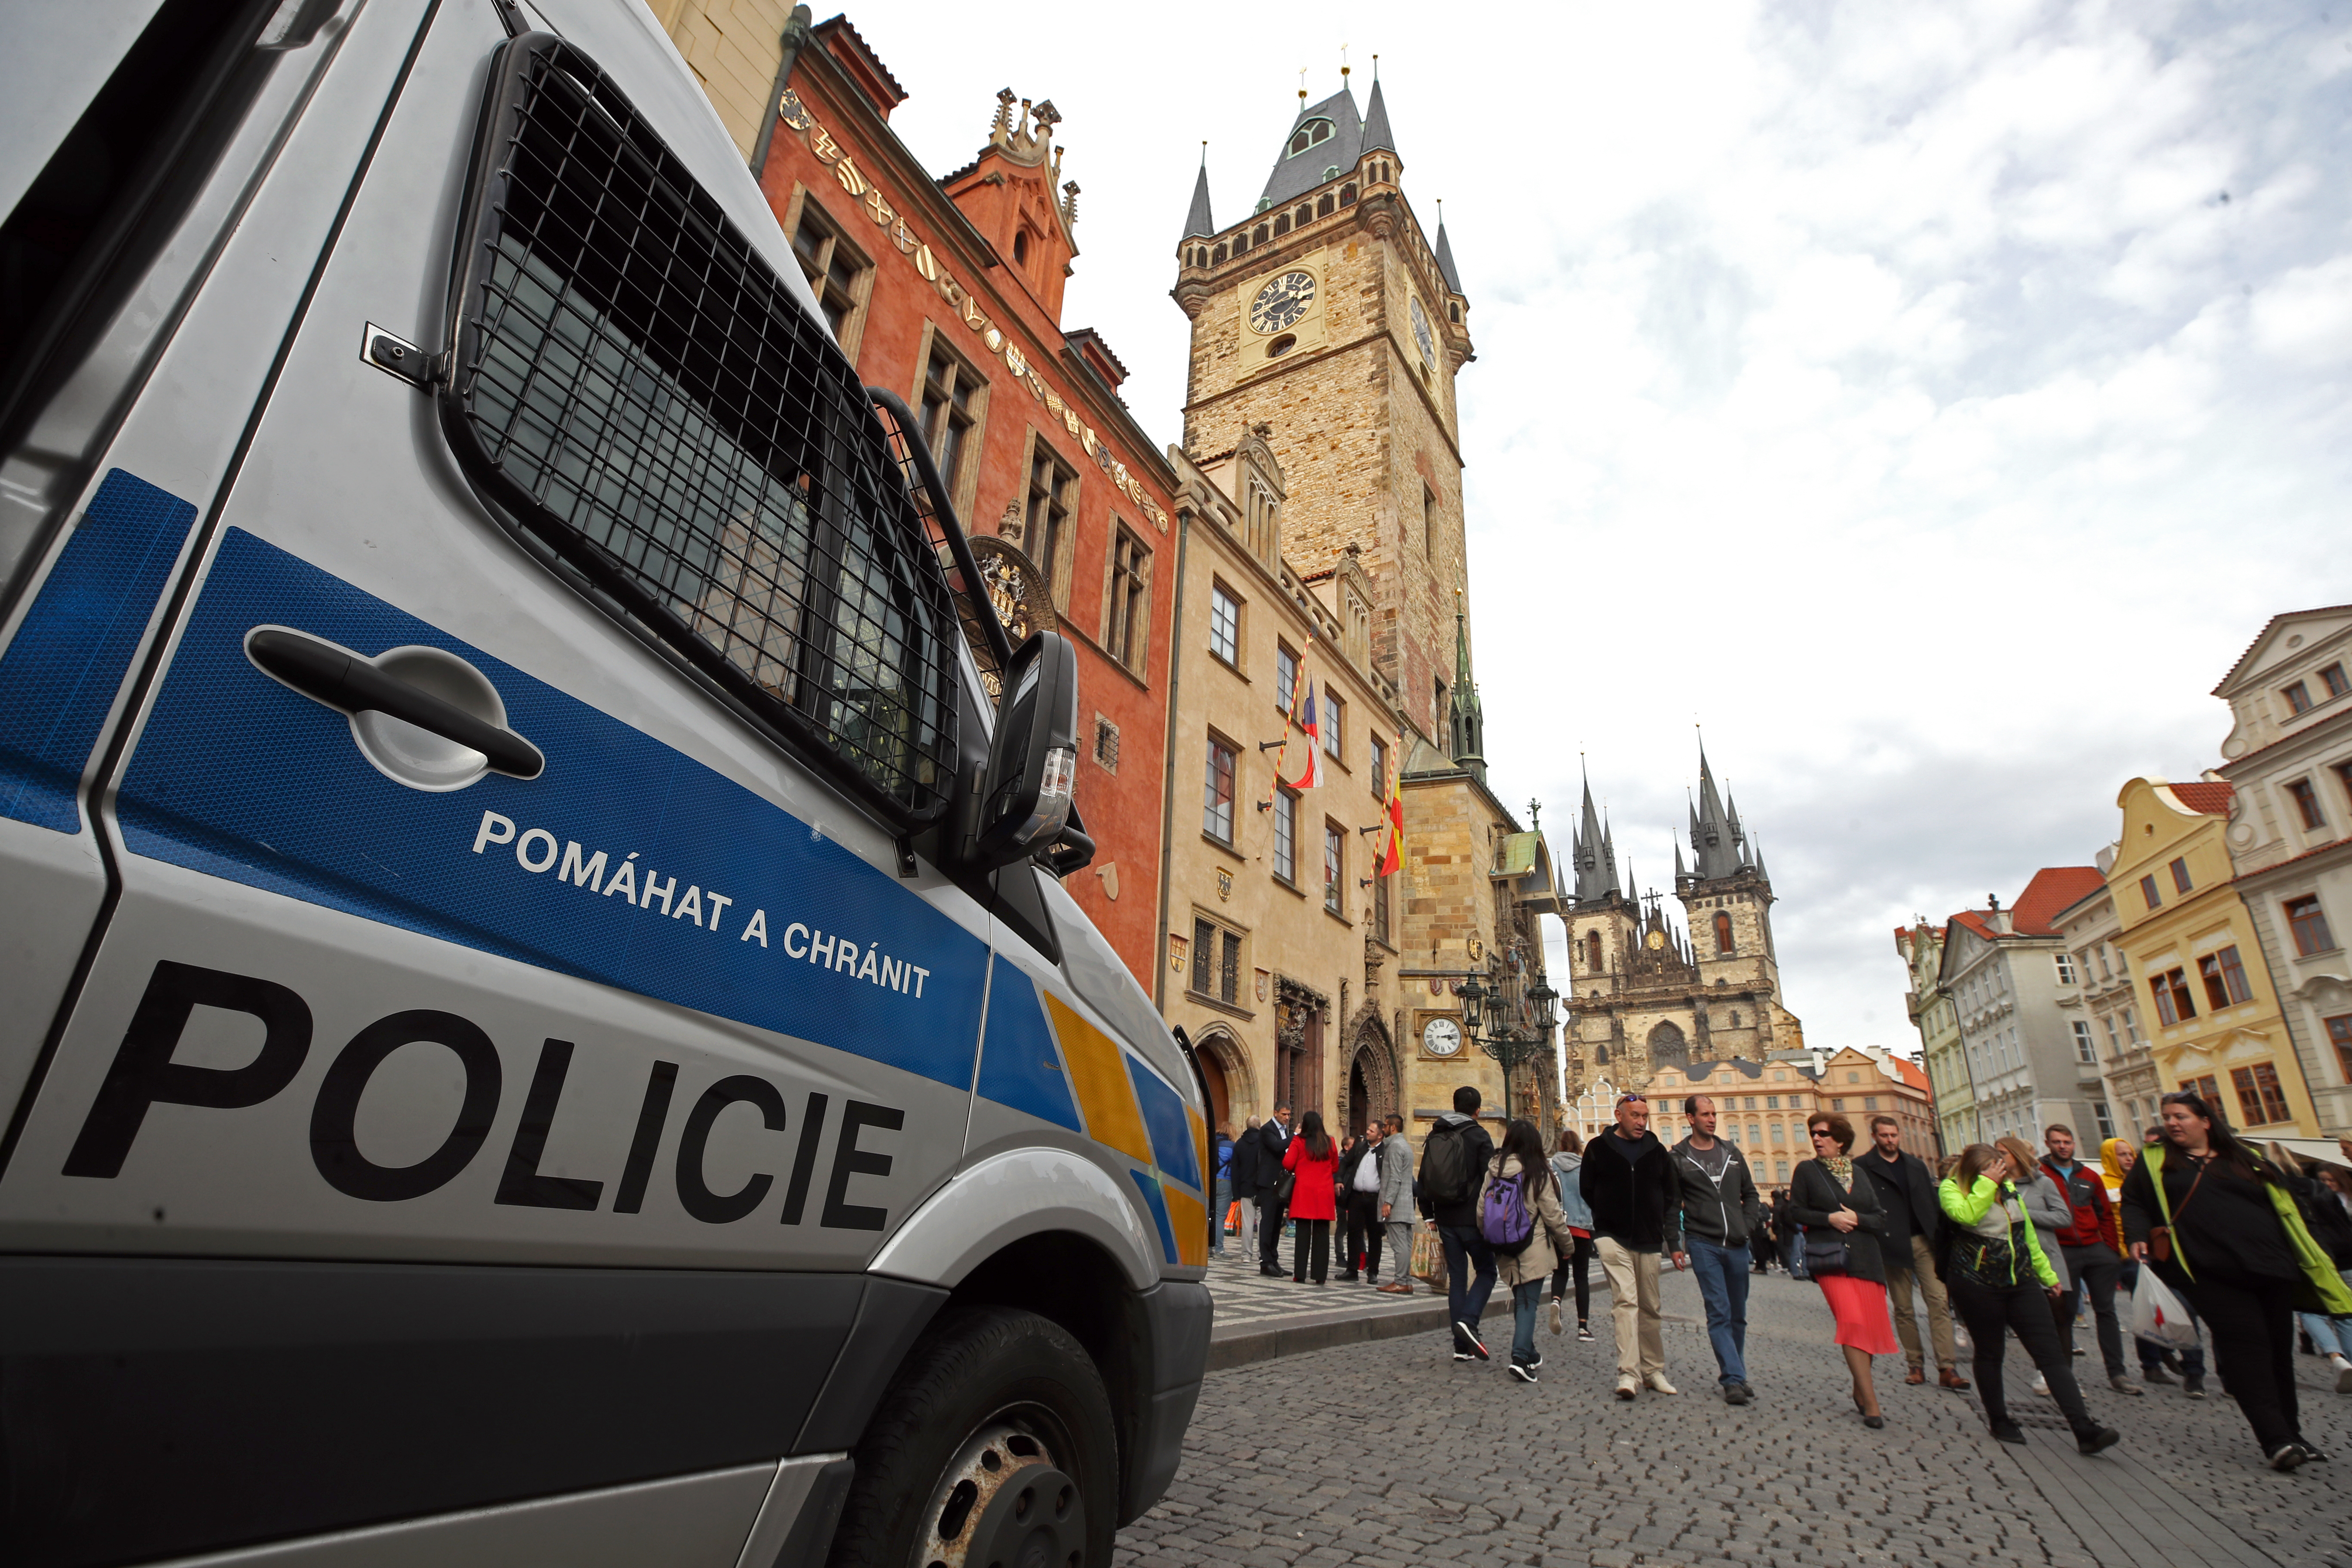 Police in Prague